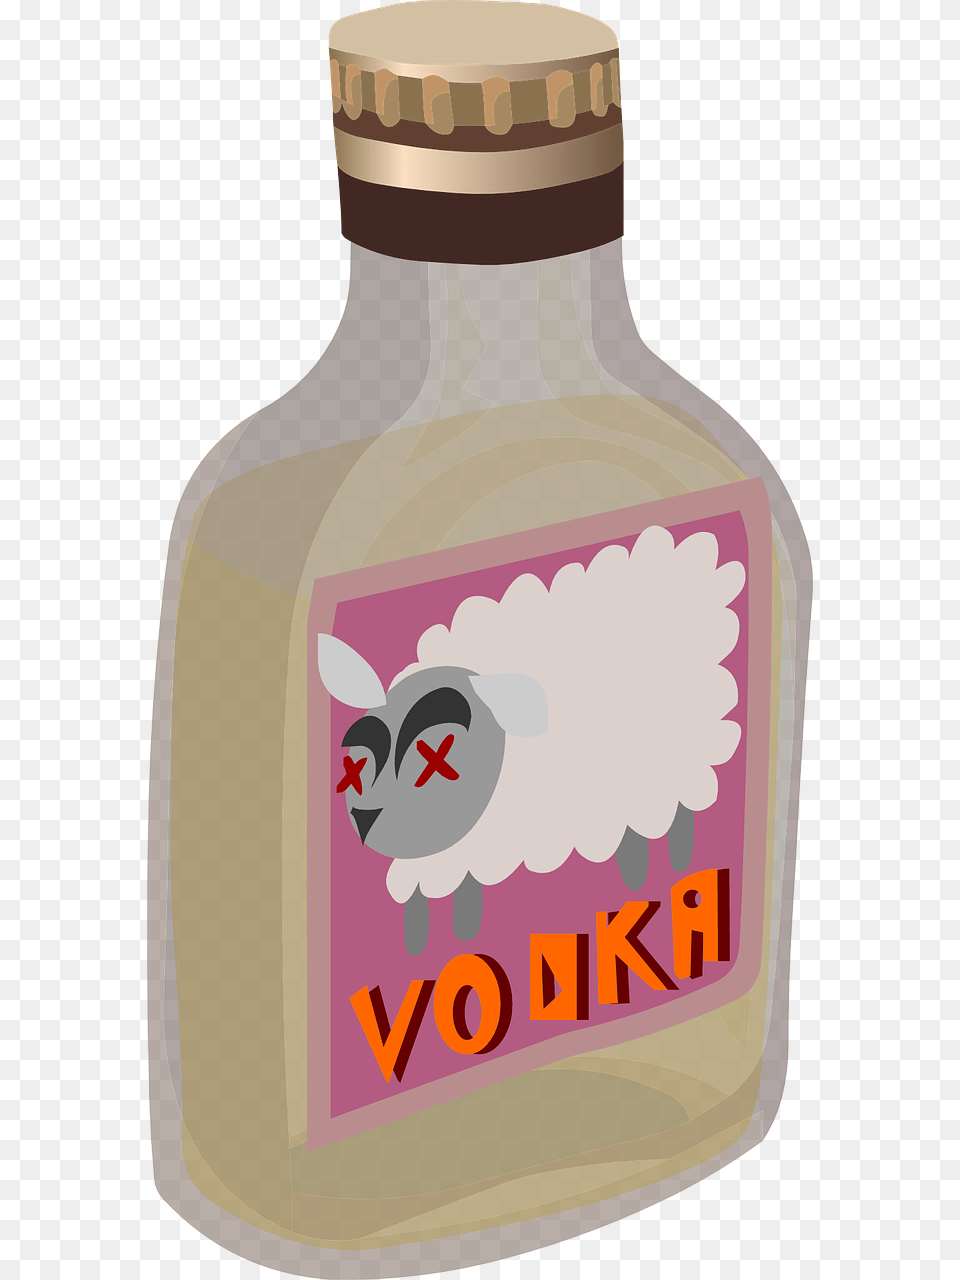 Cartoon Vodka Bottle, Jar Free Transparent Png